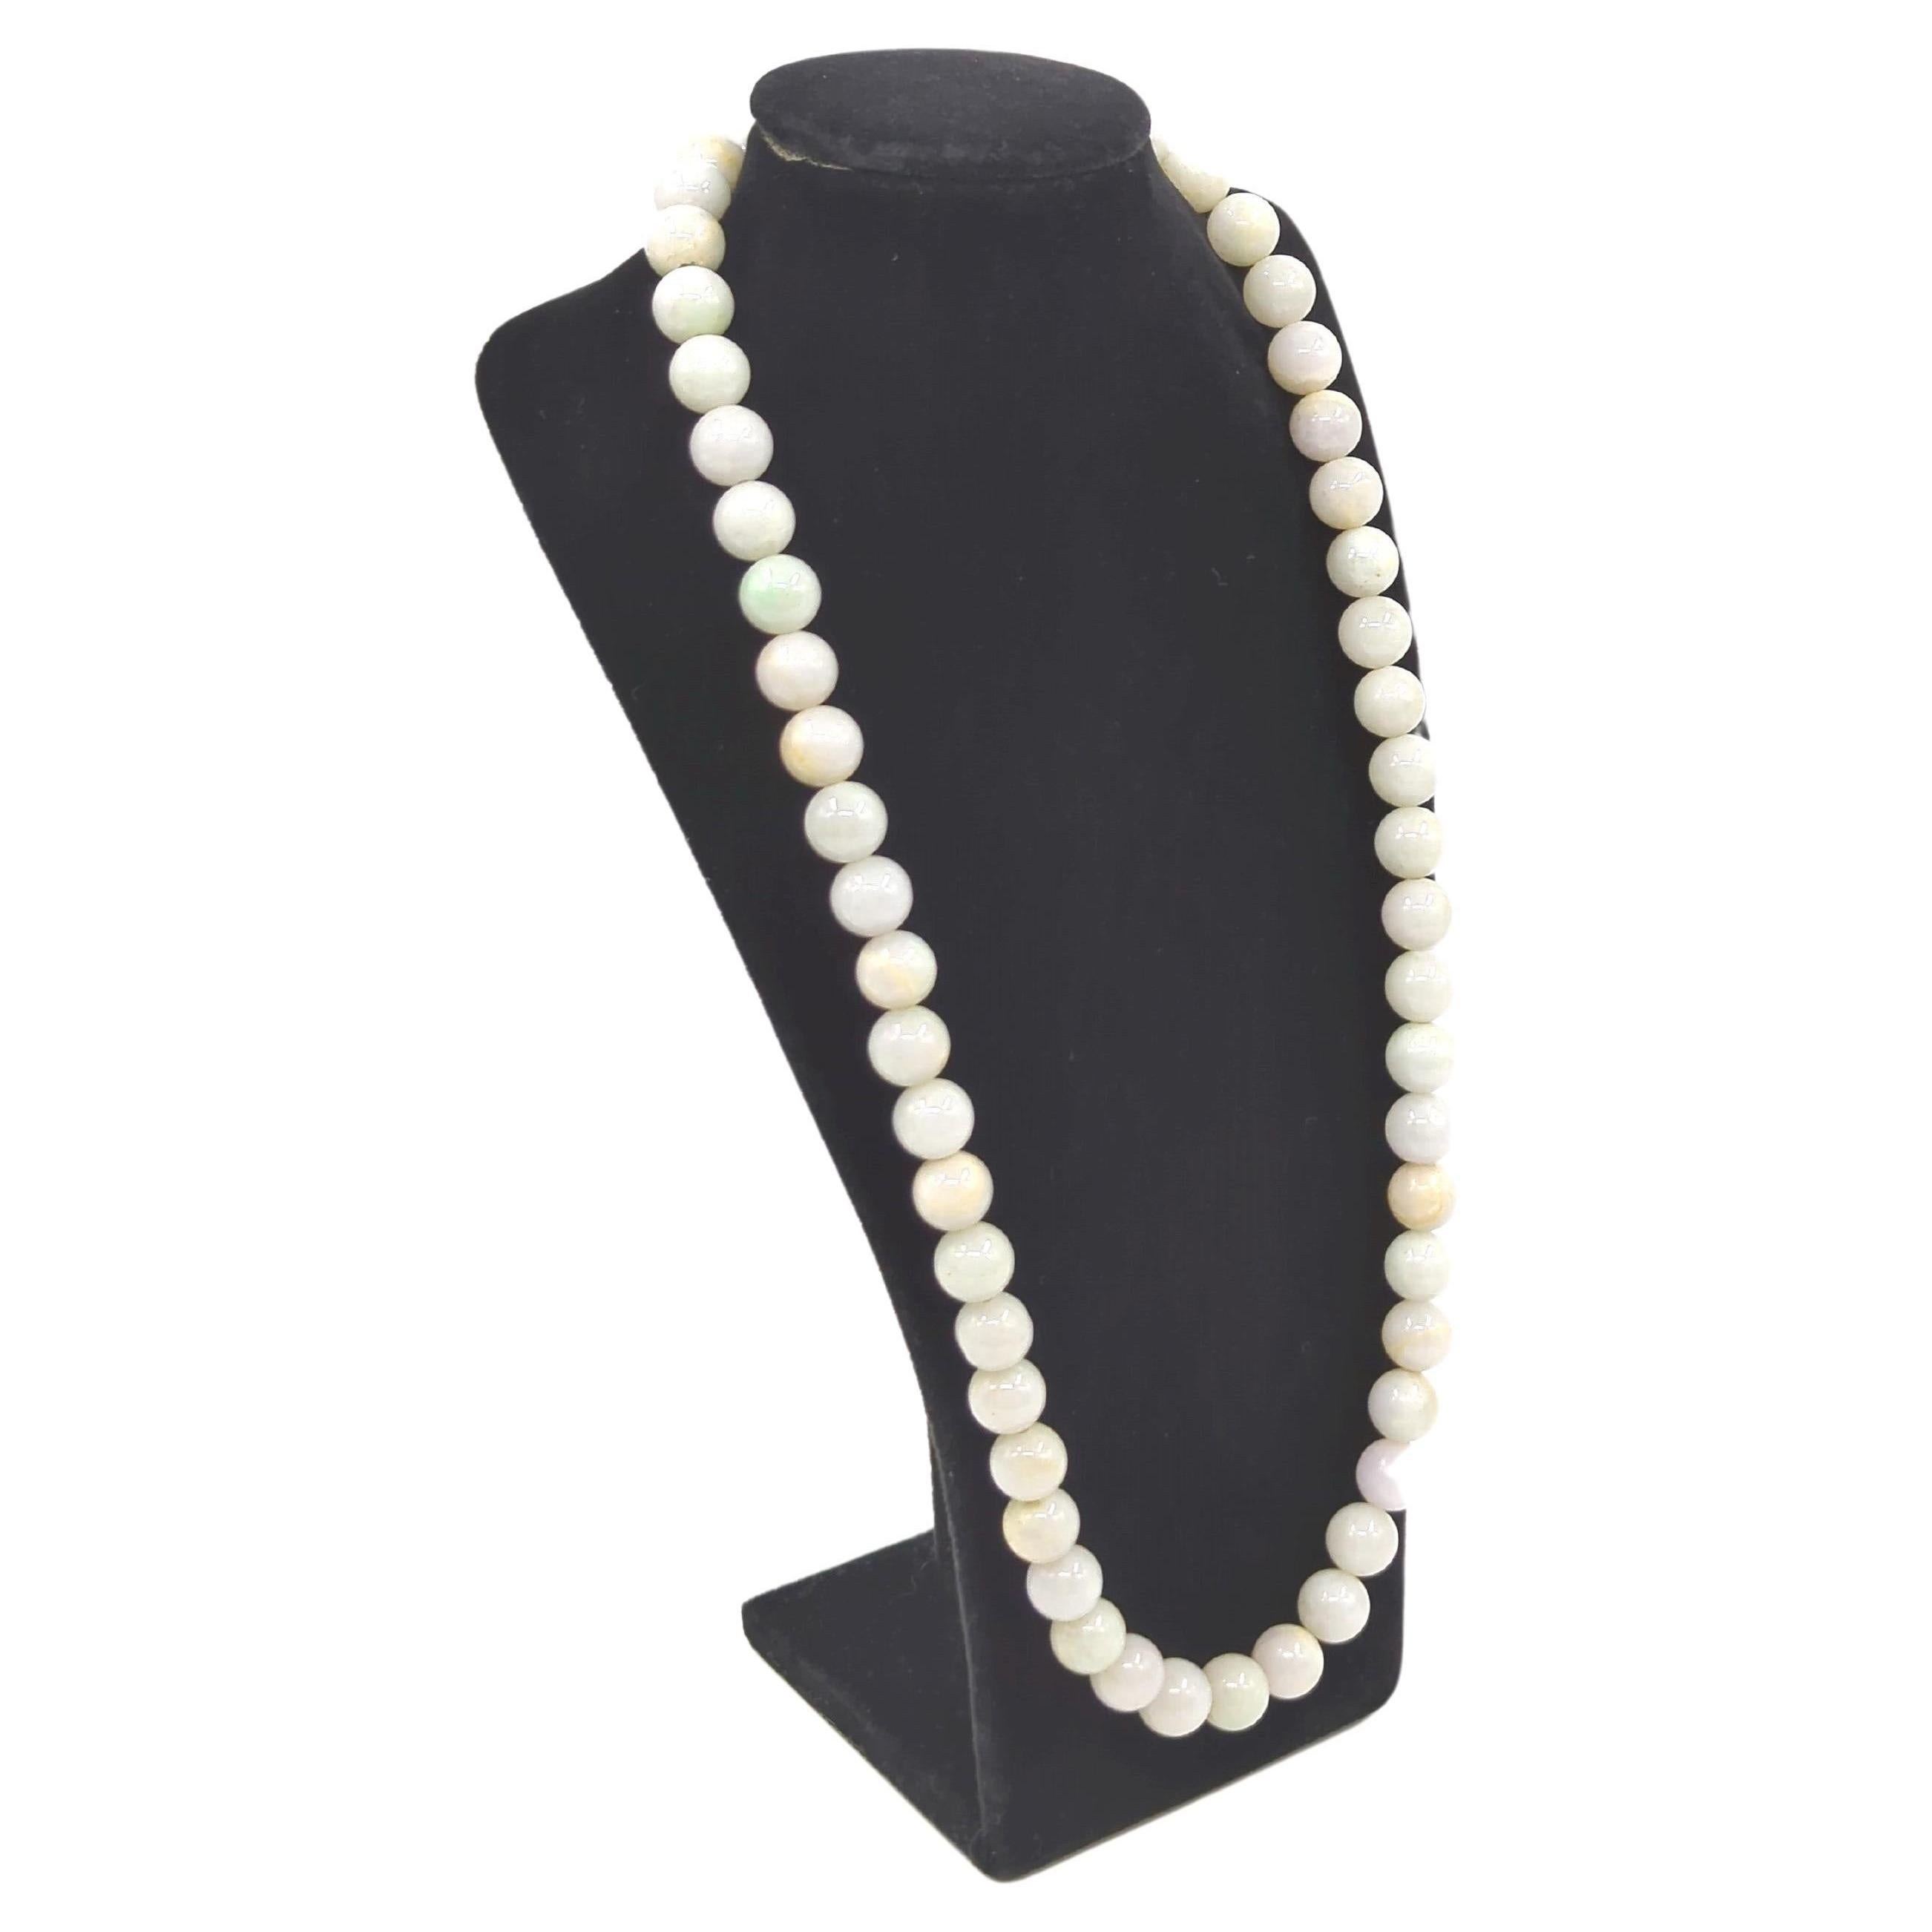 Ce collier de perles en jadéite naturelle du milieu du siècle est composé de 55 perles de jadéite méticuleusement sélectionnées, chacune mesurant environ 11 mm de diamètre. Le collier atteint une longueur totale de 23 pouces, ce qui en fait un